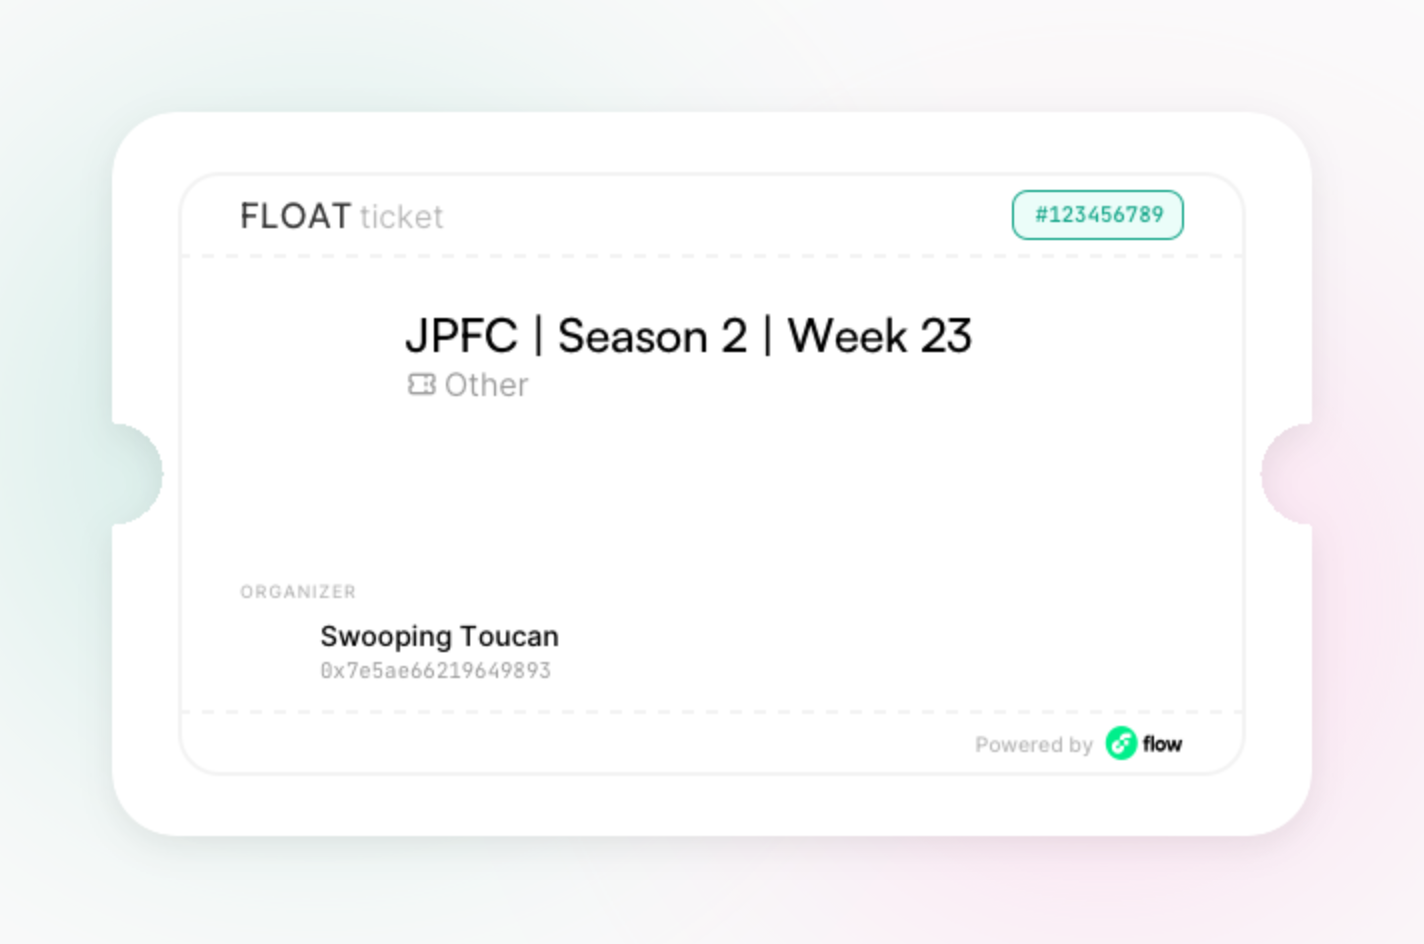 JPFC | Season 2 | Week 23 asset